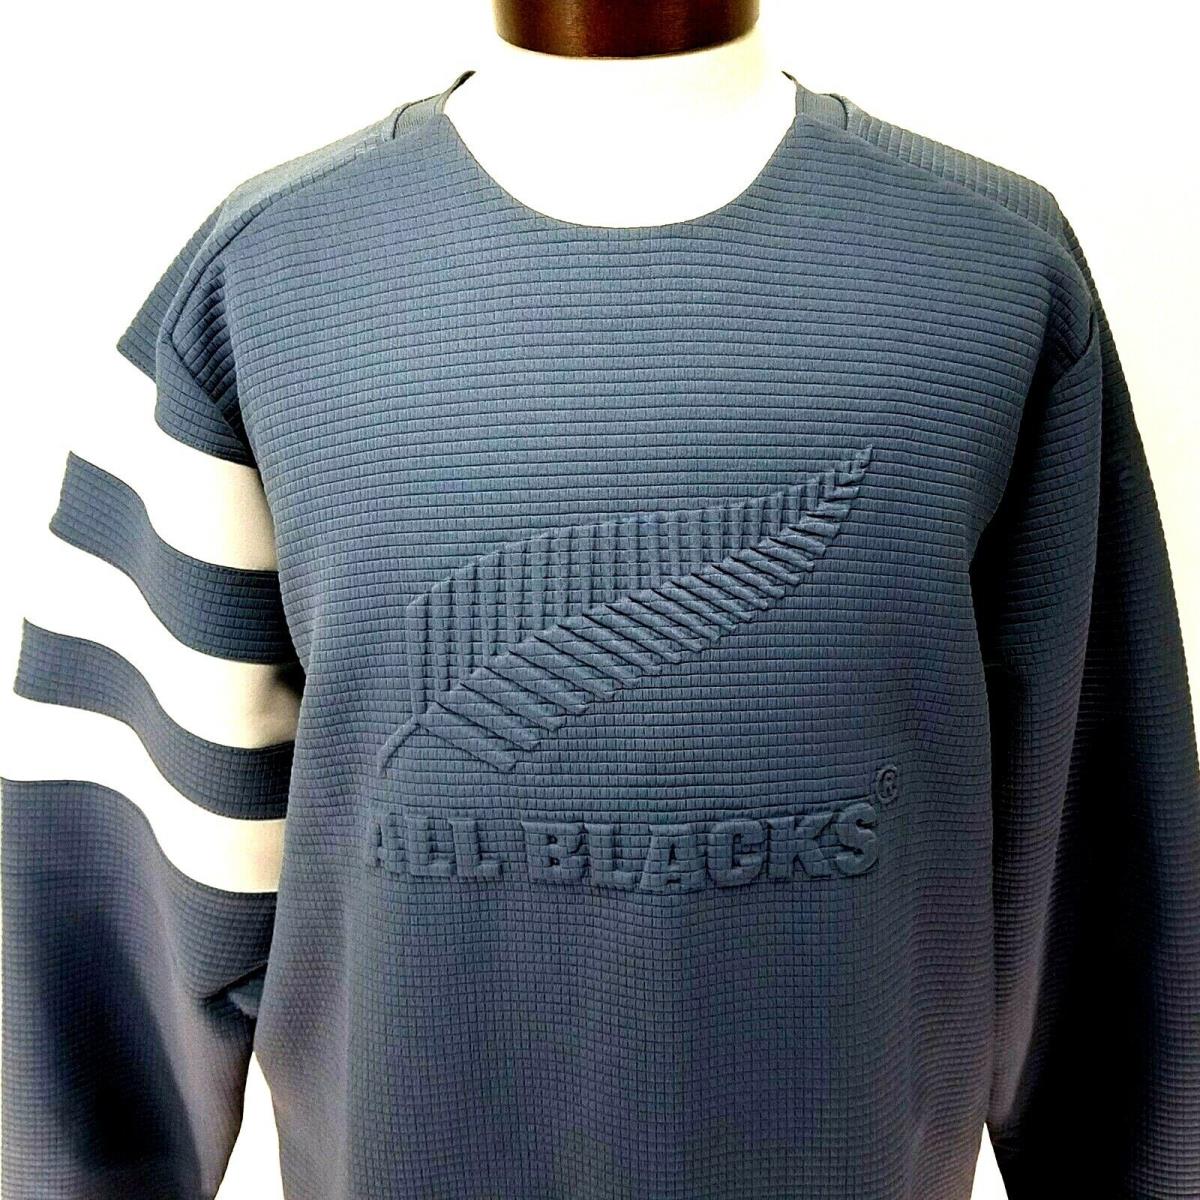 Adidas All Blacks Zealand Rugby Tech Ink/grey Sweatshirt EH5574 Mens XL